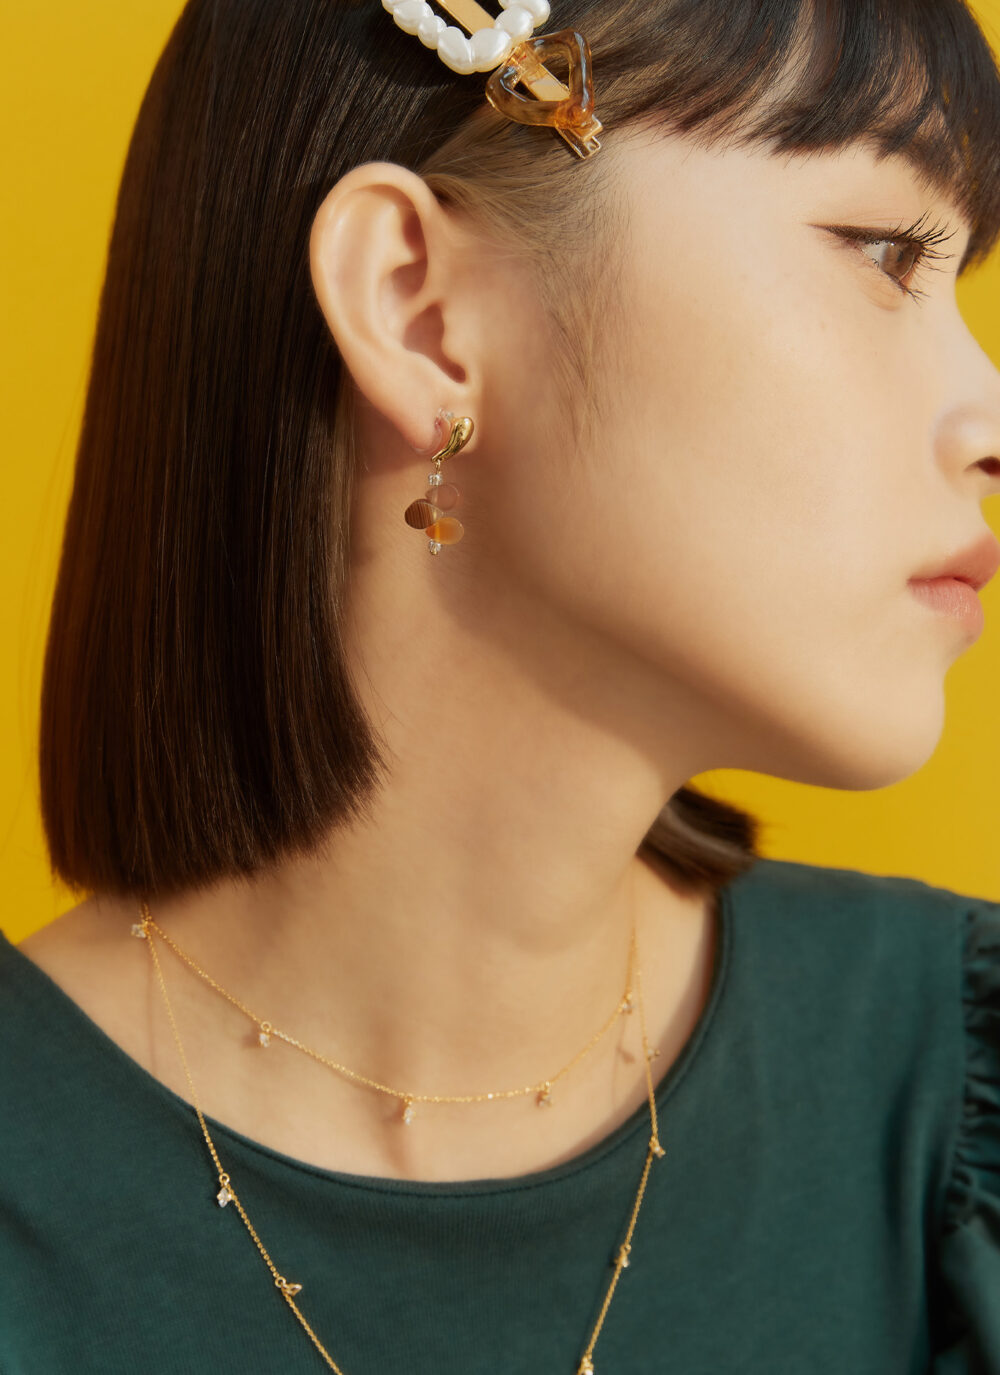 Eco安珂,韓國飾品,韓國耳環,耳針式耳環,矽膠夾耳環,透明耳夾耳環,彩石耳環